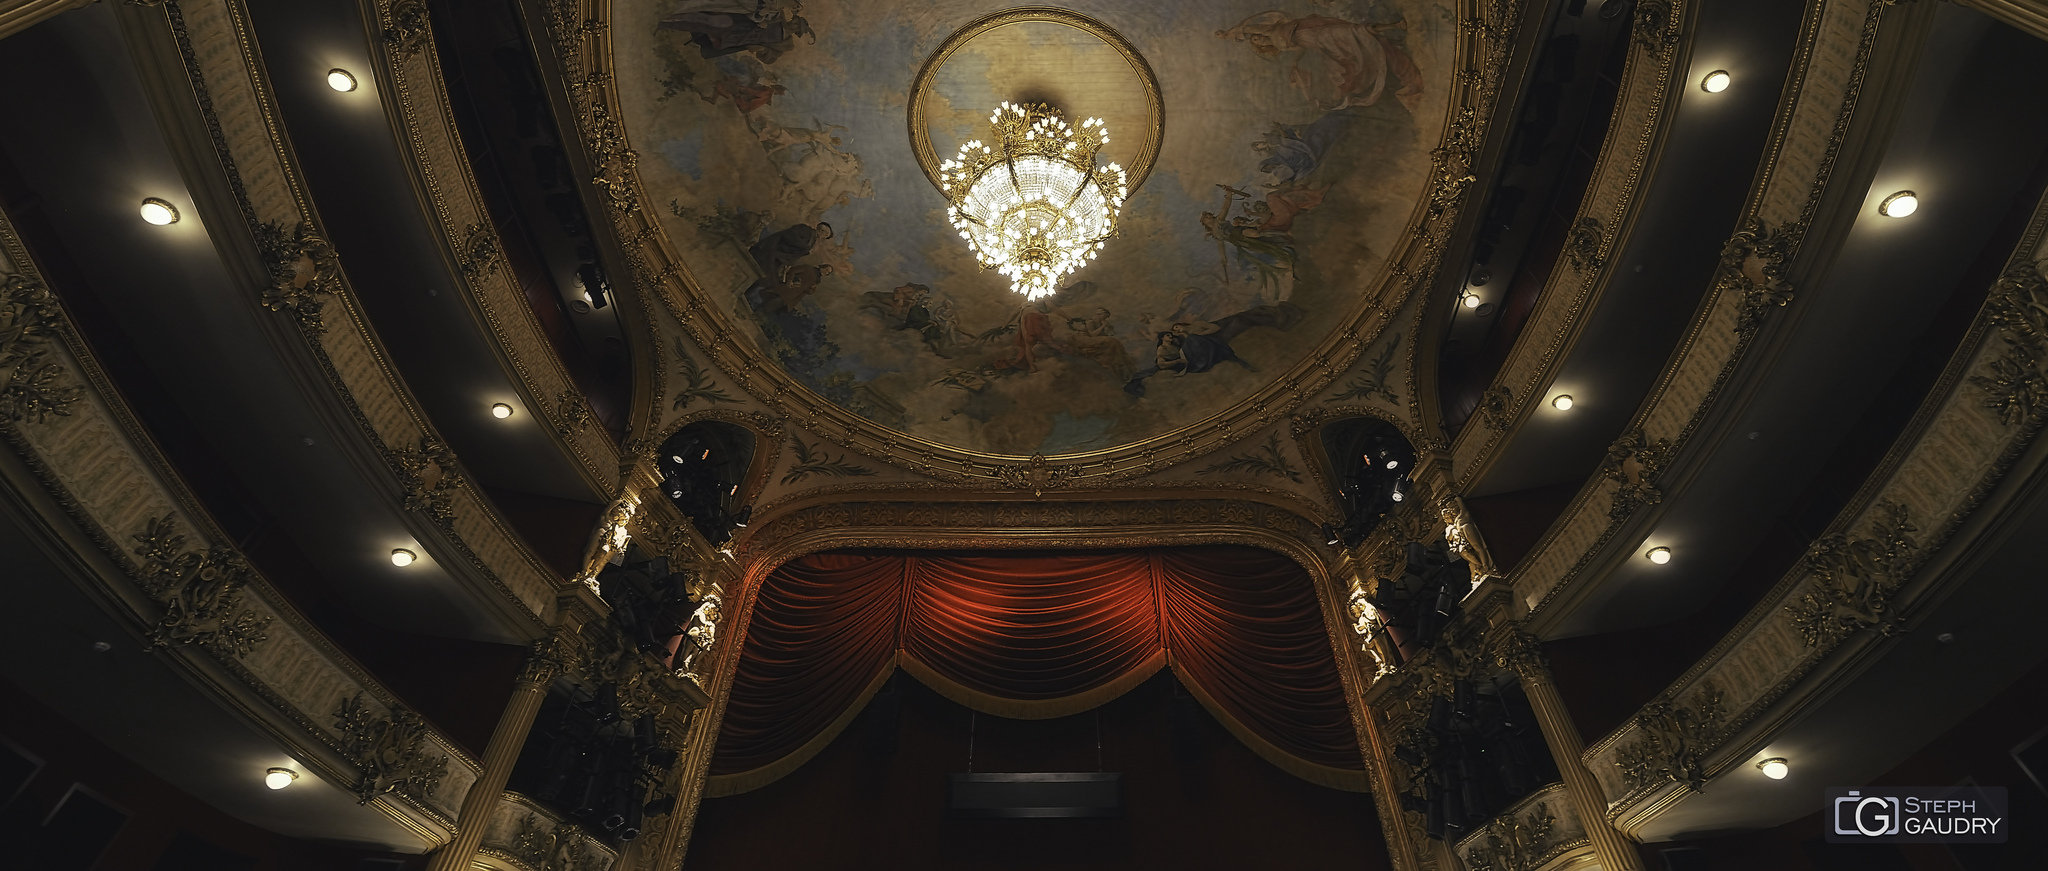 Opéra Royal de Wallonie-Liège - Le plafond [Klicken Sie hier, um die Diashow zu starten]